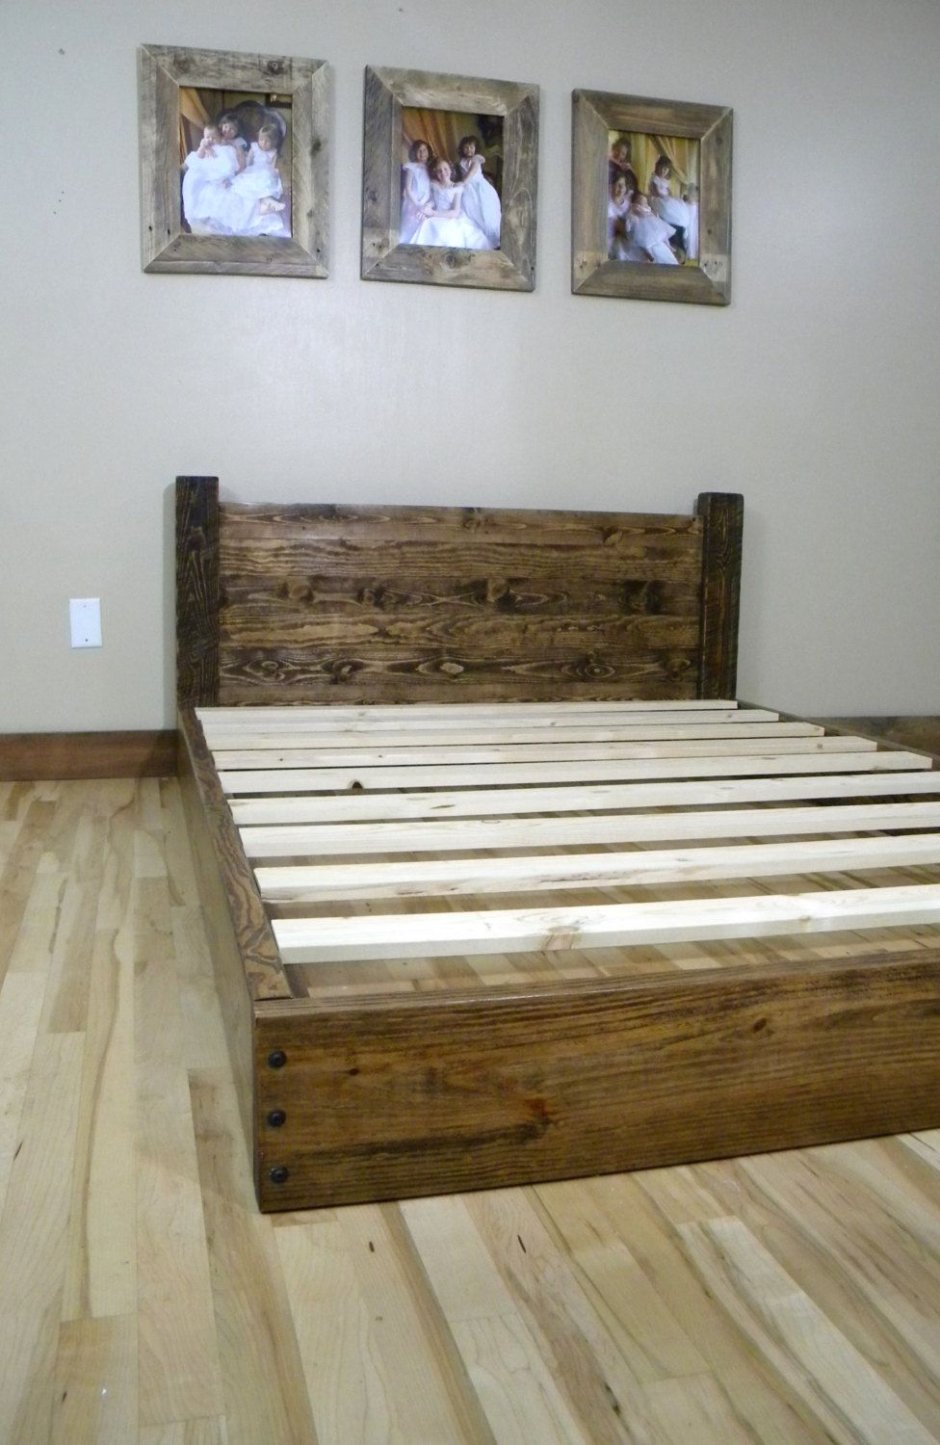 Кровать из деревянных щитов